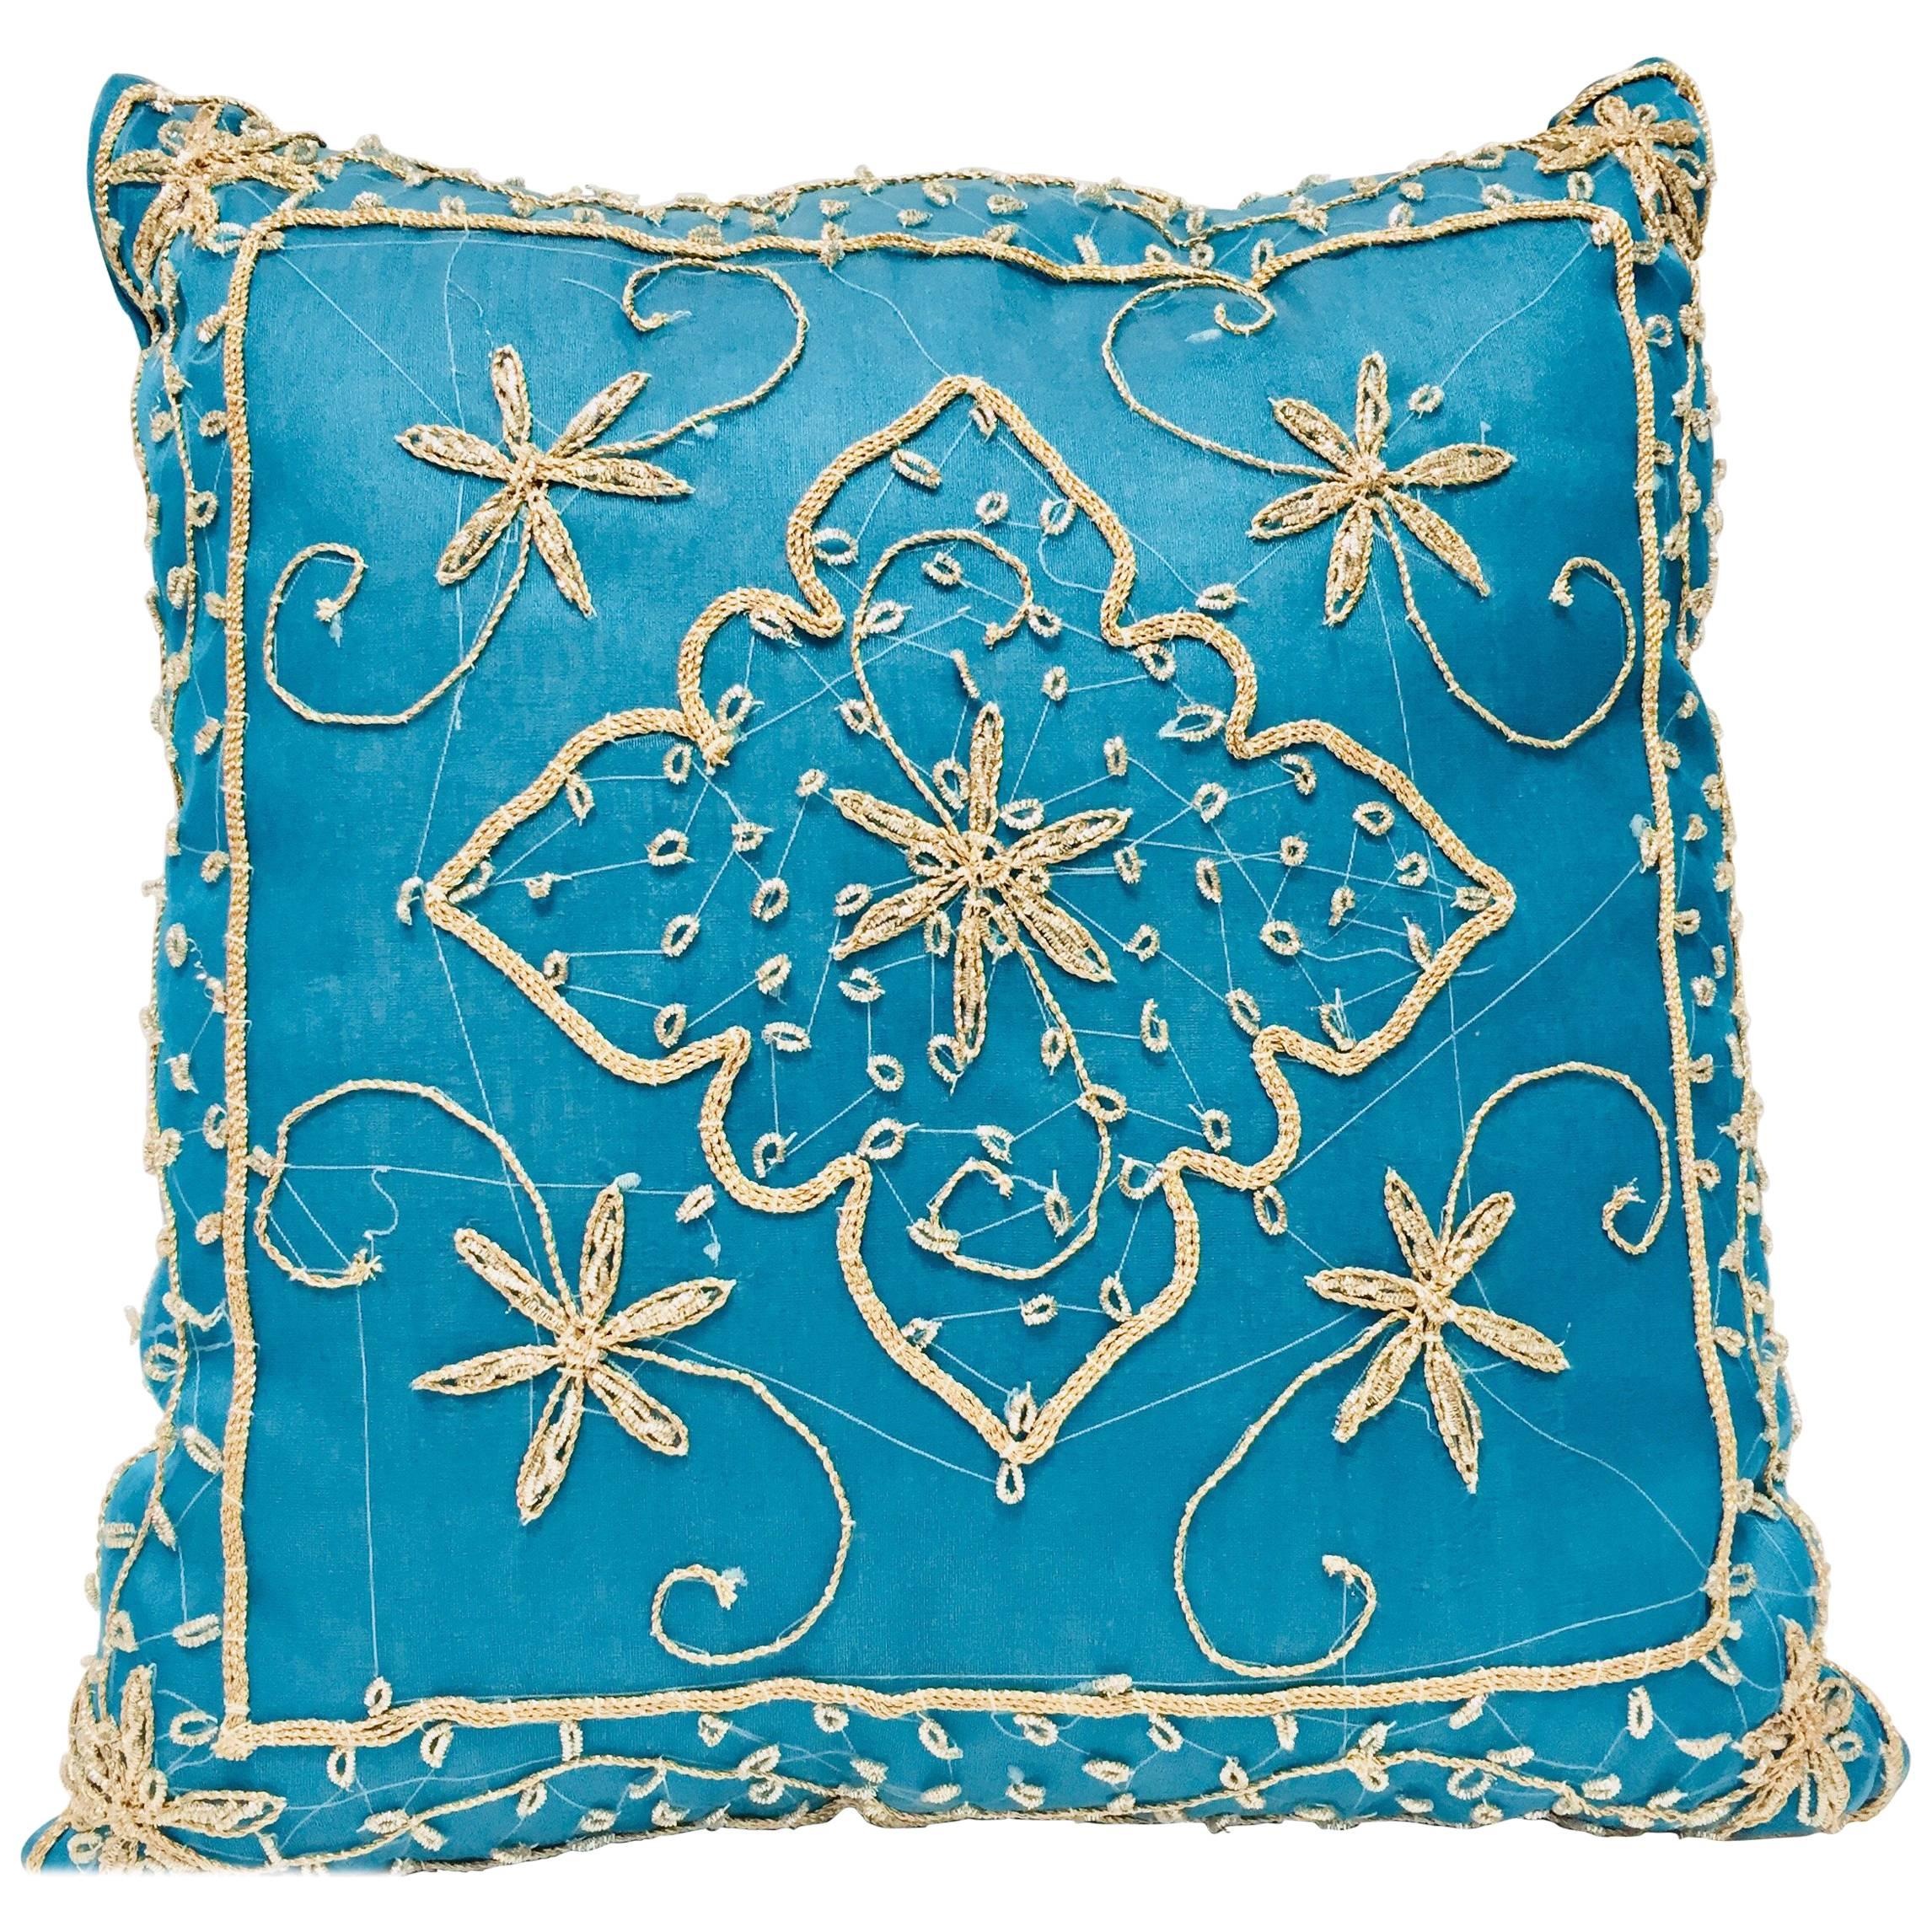 Dekoratives türkisfarbenes maurisches Kissen mit Pailletten und Perlen verziert